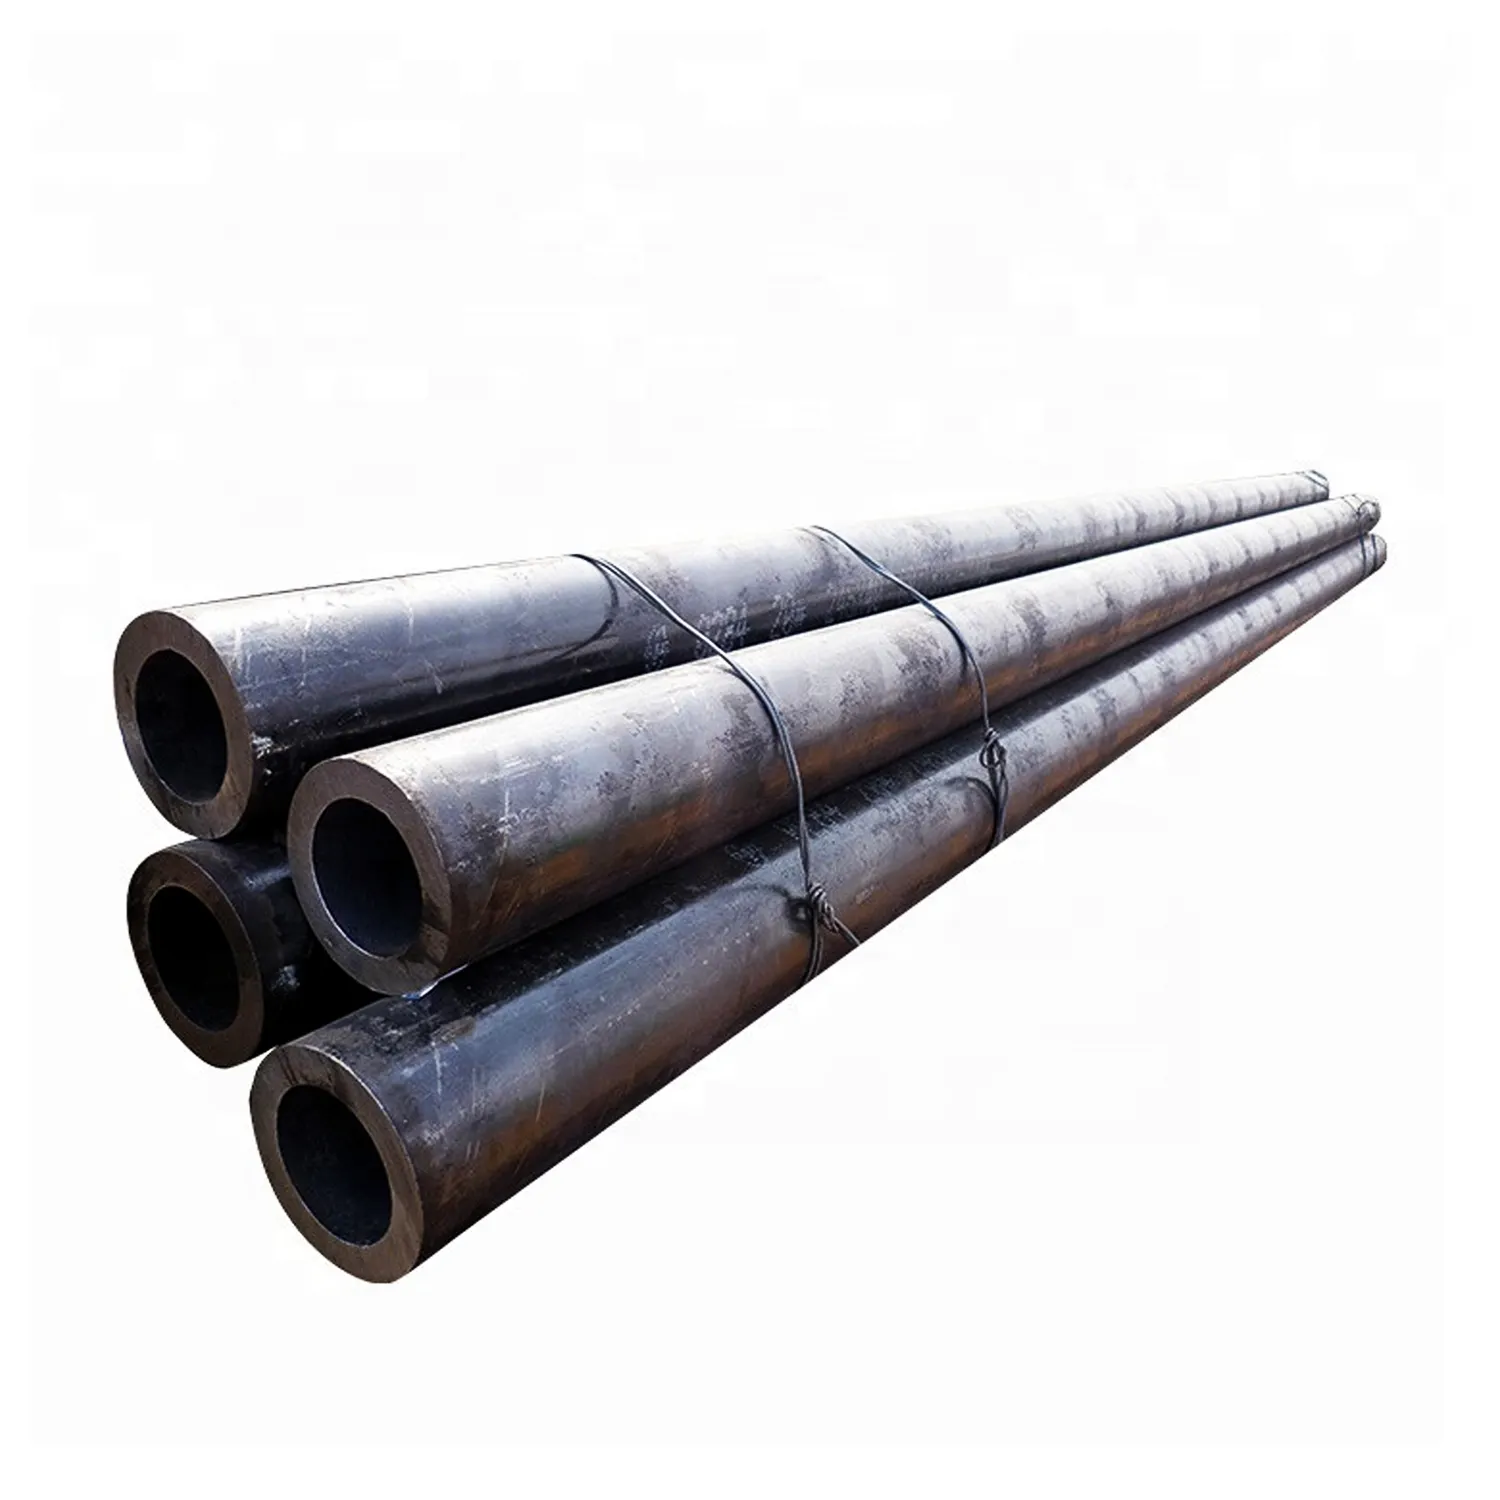 Tubo de aço carbono galvanizado API 5L ASTM A53/A106 X42/X52/X56/X60/65 X70 preto quadrado ranhurado soldado/sem costura 6m Broca/Tubo de óleo